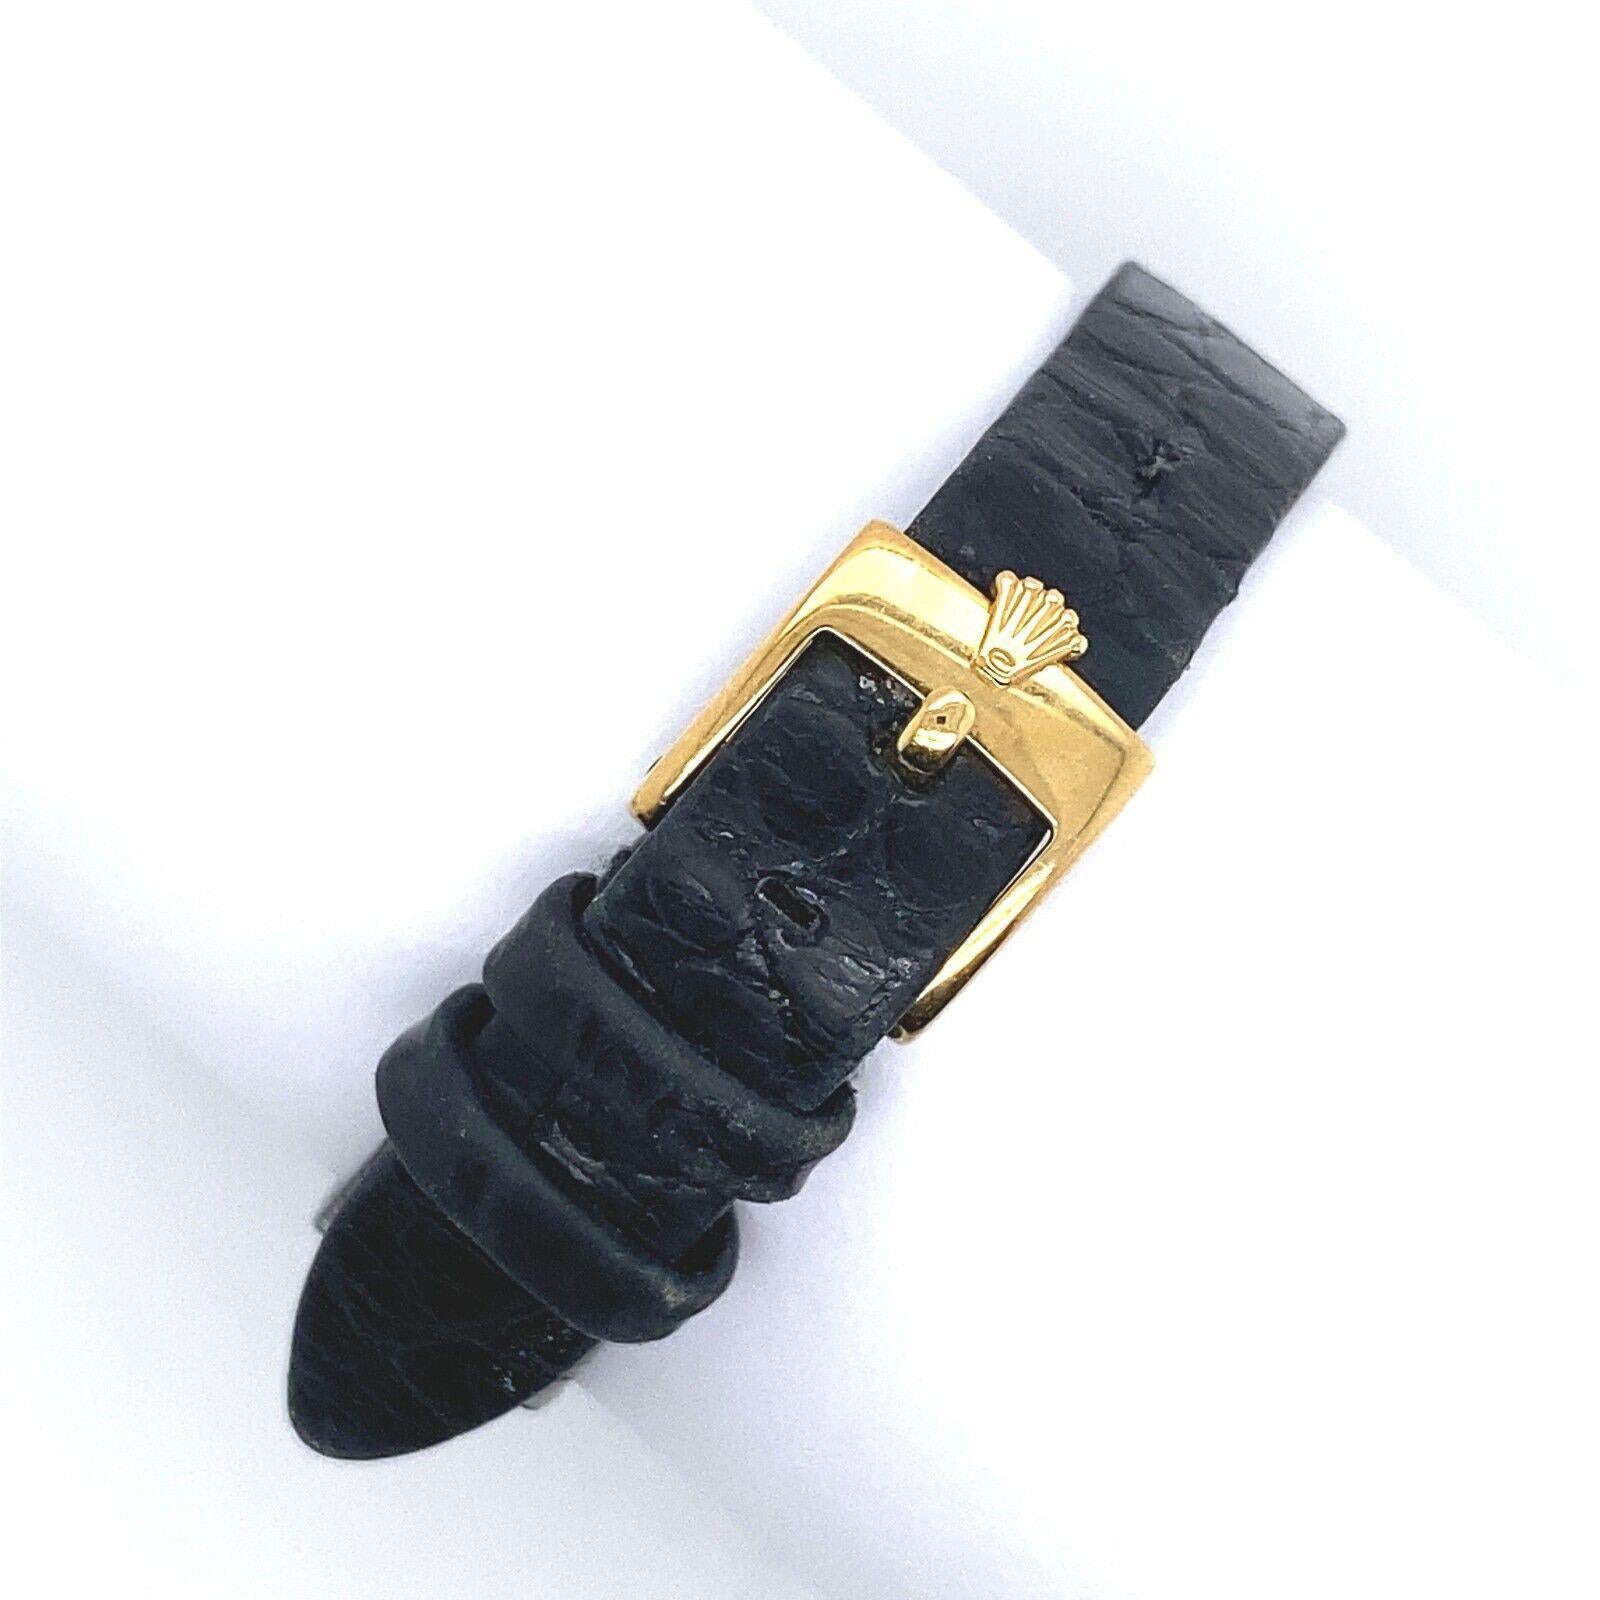 La Rolex Cellini est une montre élégante combinant des normes élevées de perfection et d'harmonie dans chaque détail, sertie de diamants dans un boîtier et une boucle en or jaune 18ct, avec 2 pièces de bracelet en cuir de crocodile noir. Il s'agit